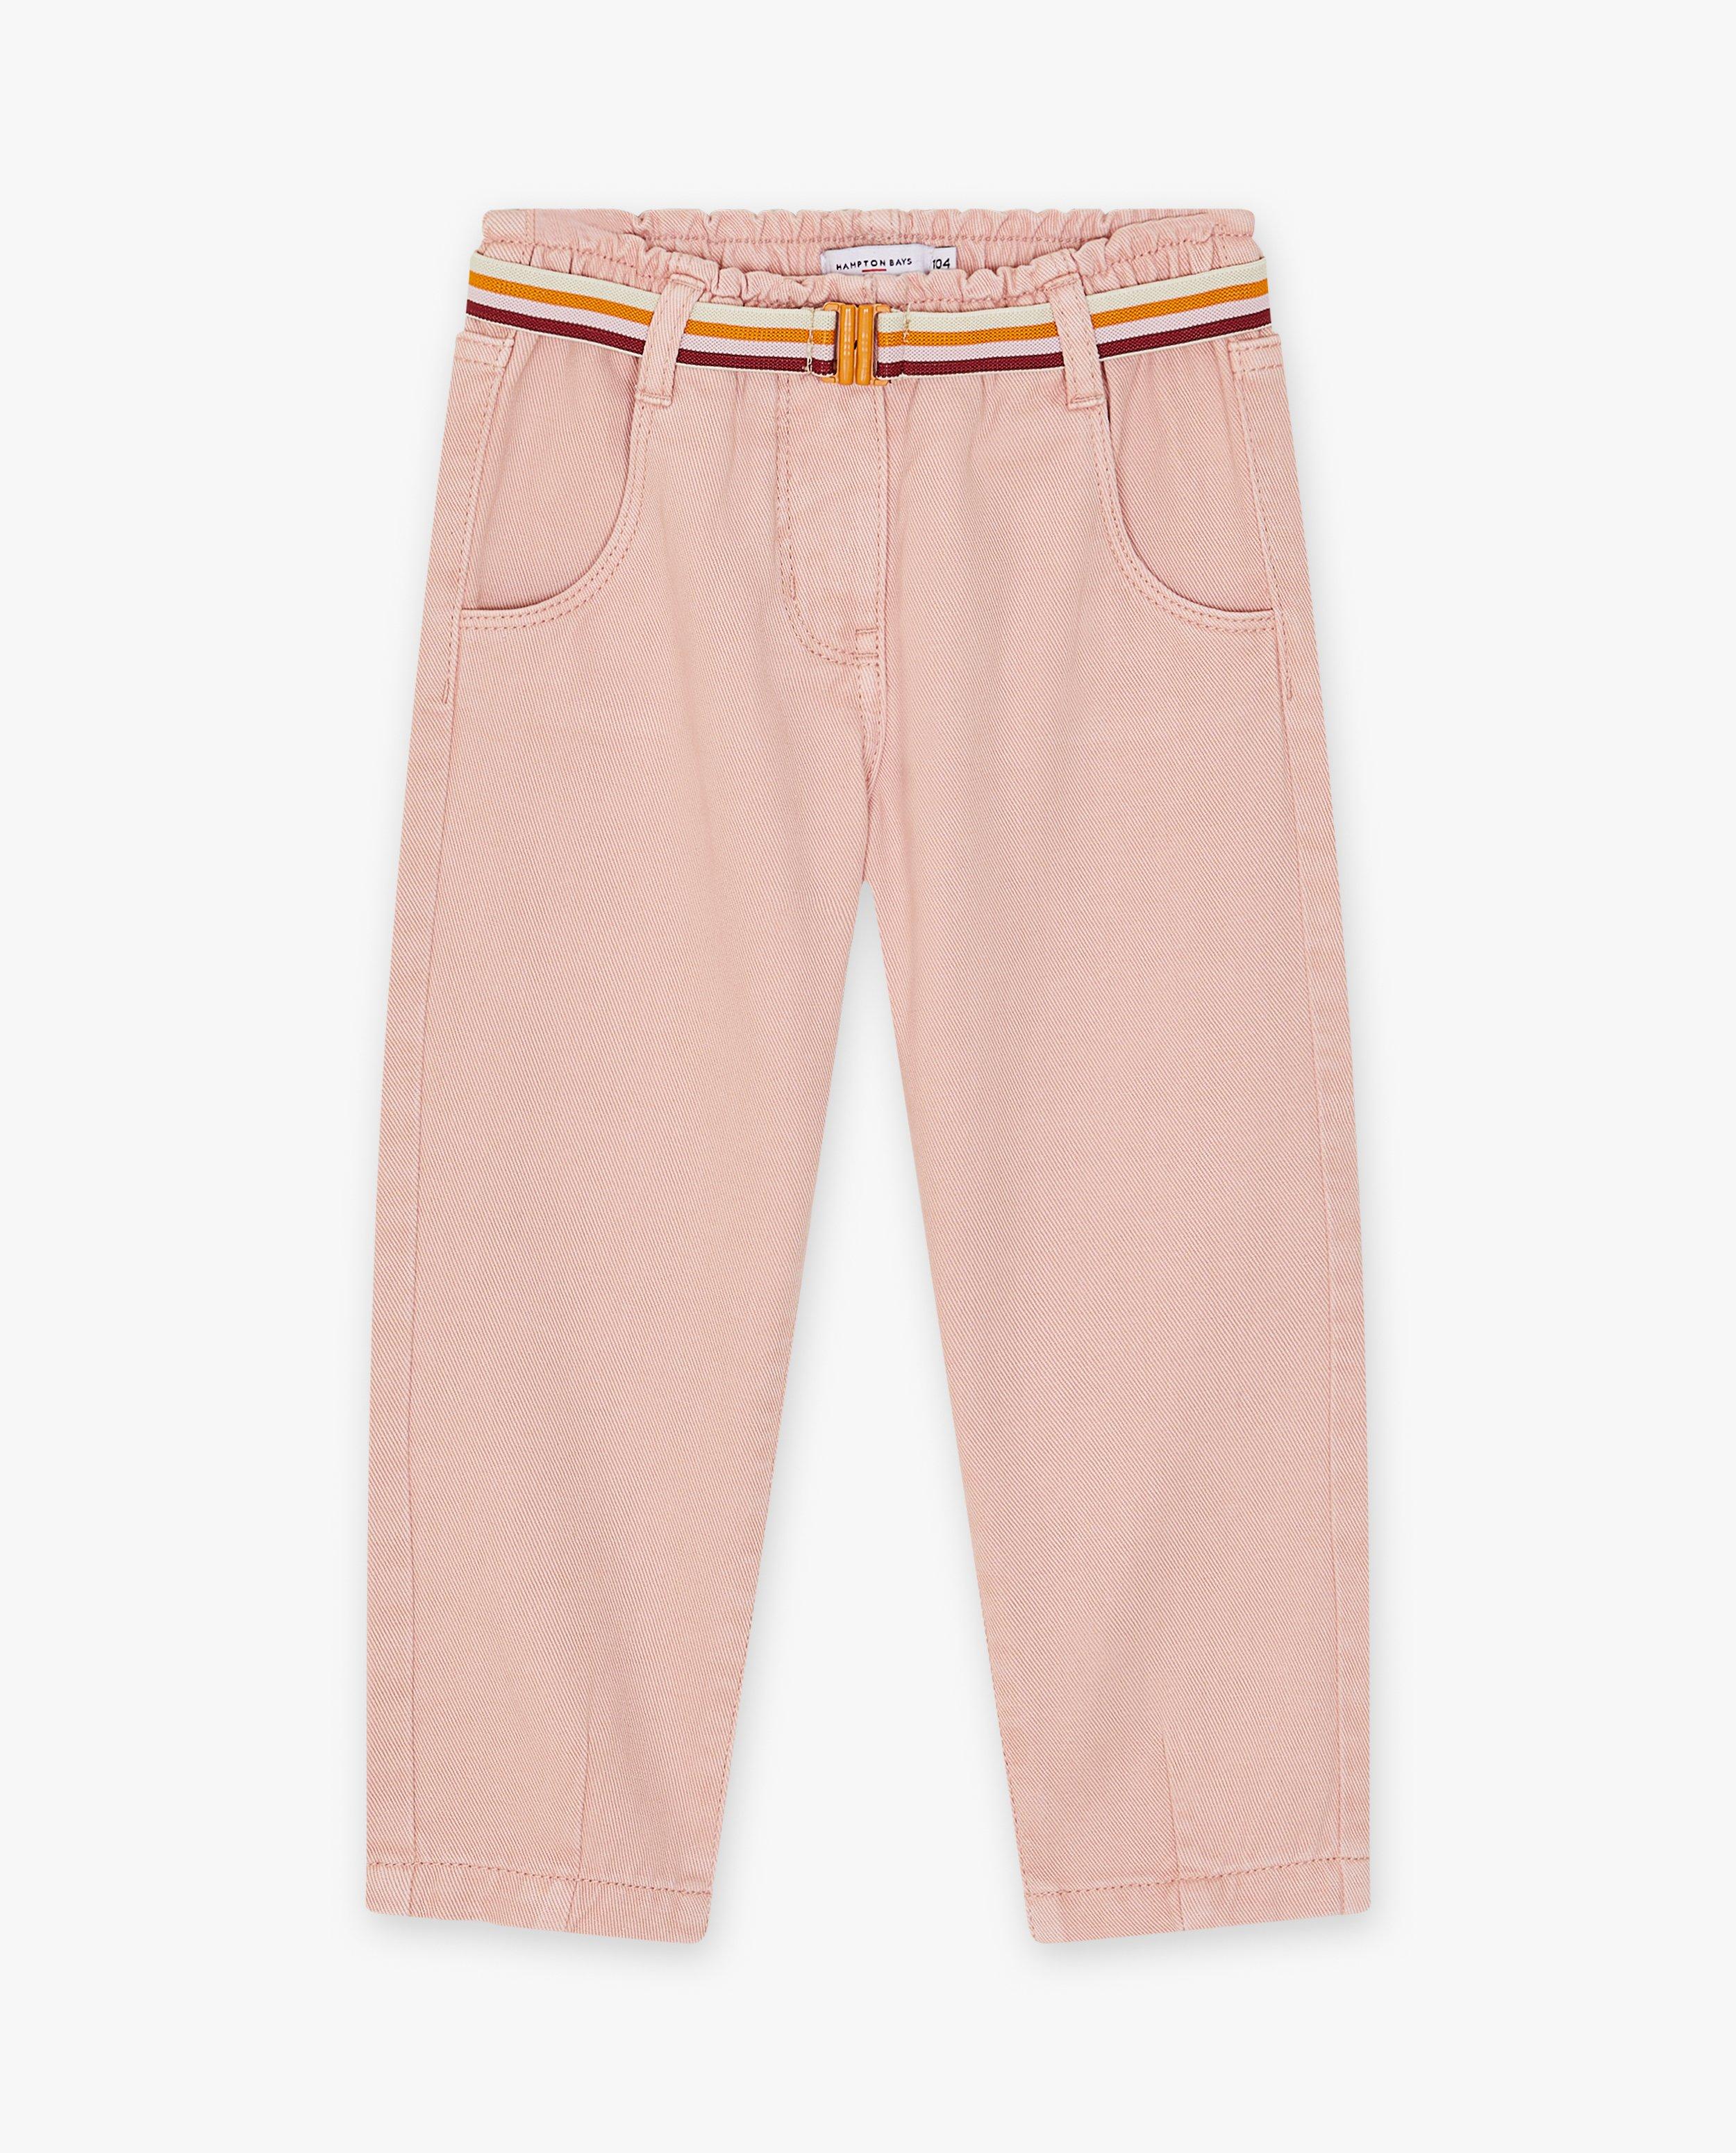 Pantalons - Jeans rose avec une ceinture